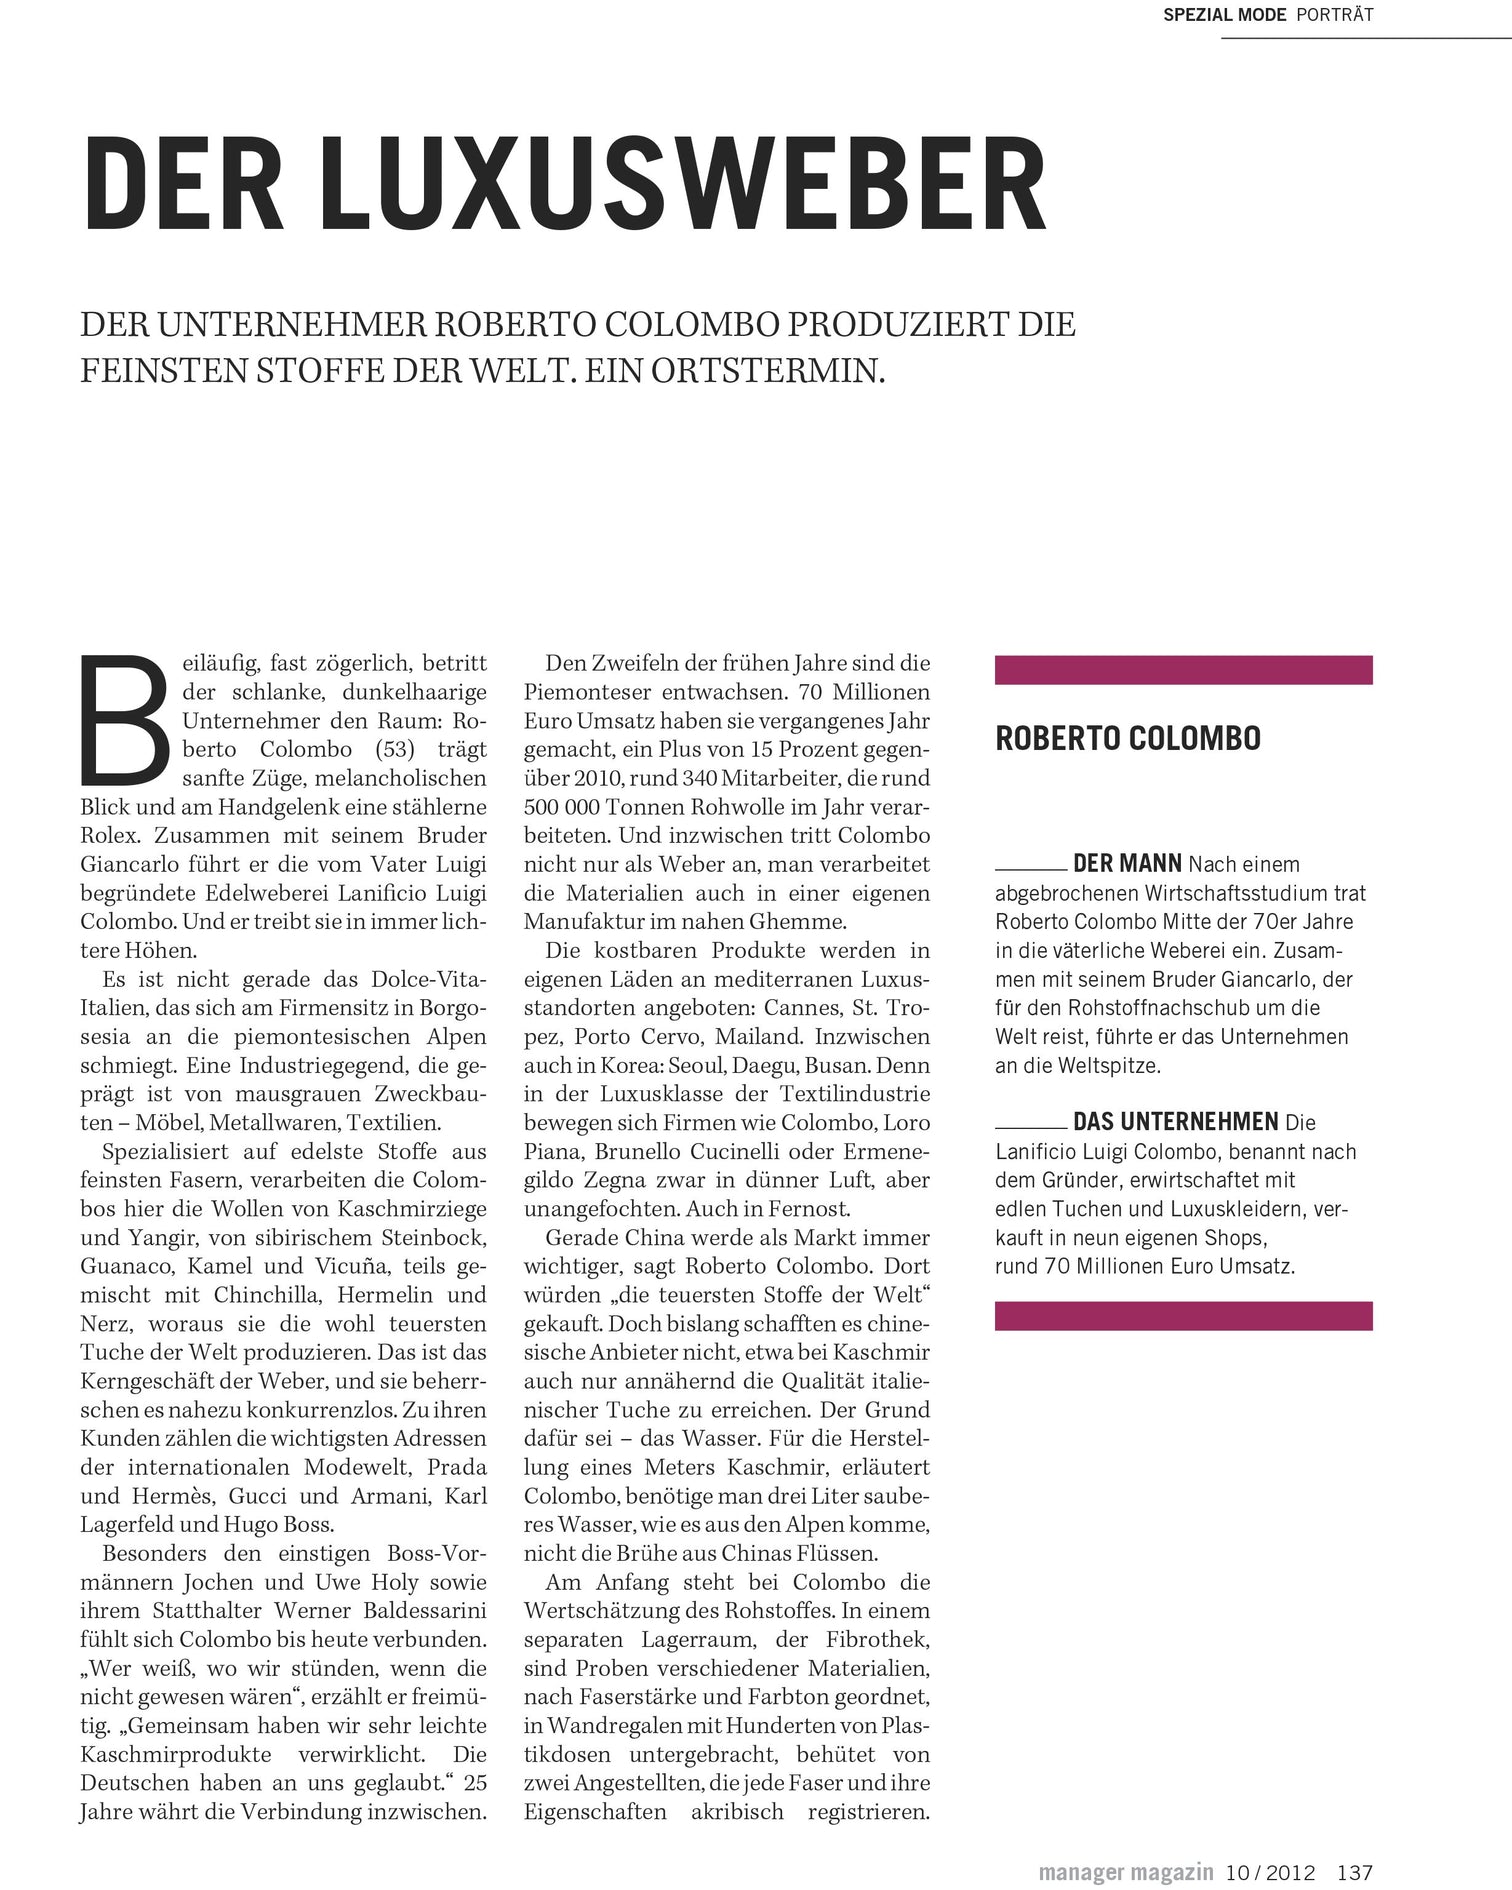 Manager Magazin Der Spiegel - Der Luxusweber